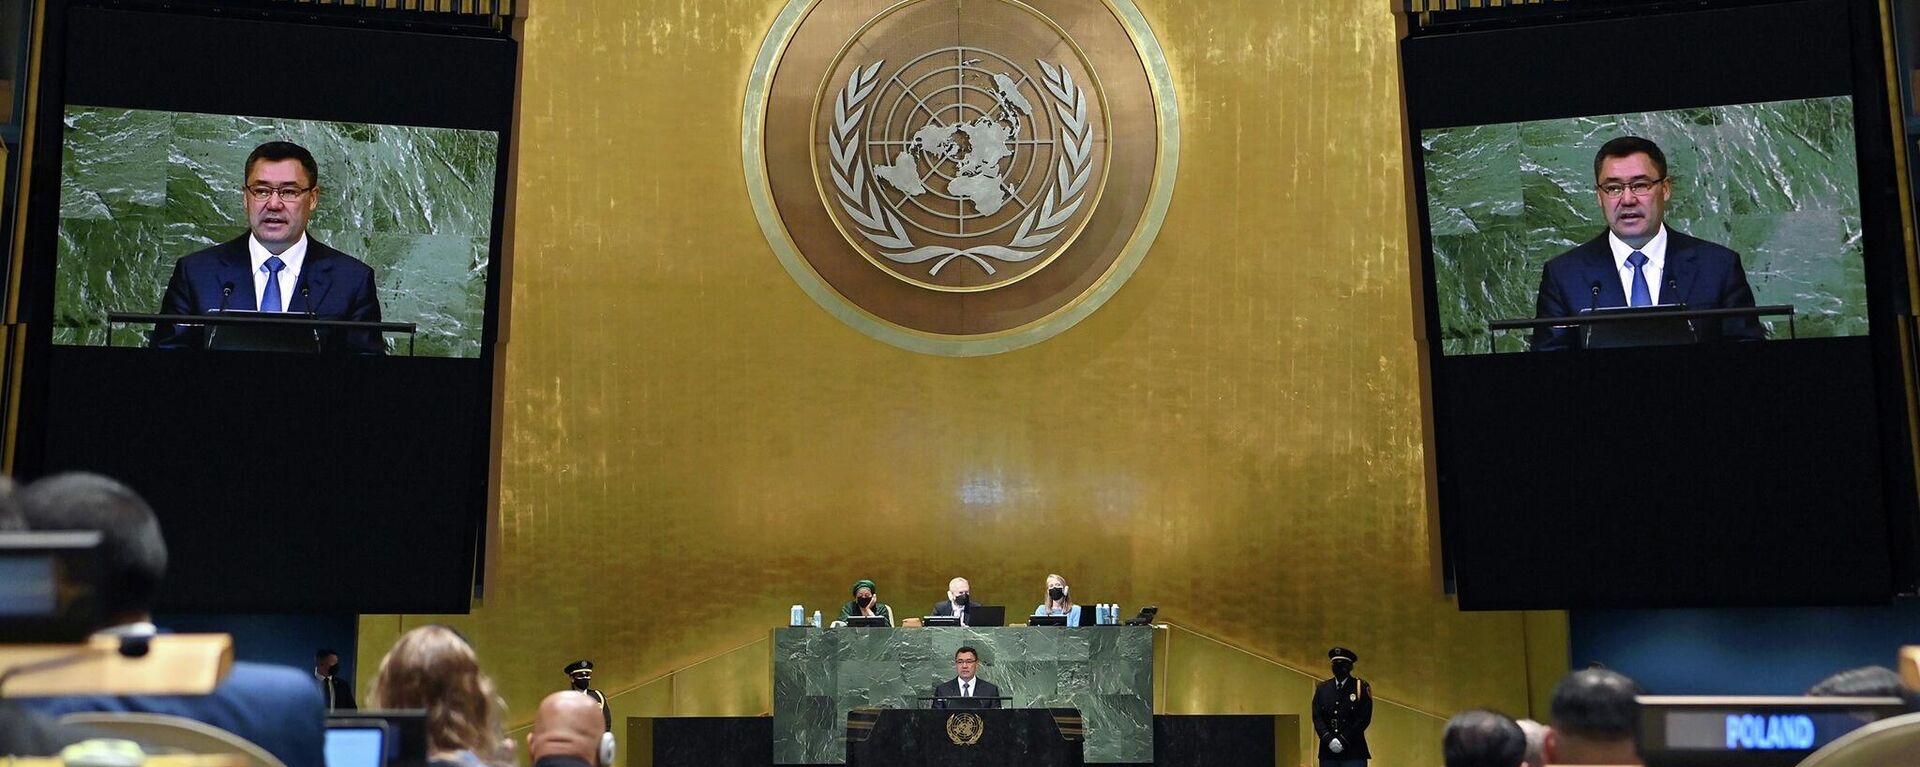 Президент Кыргызстана Садыр Жапаров во время выступления на 77-й сессии Генеральной Ассамблеи ООН в Нью-Йорке. 20 сентября 2022 года - Sputnik Кыргызстан, 1920, 20.09.2022